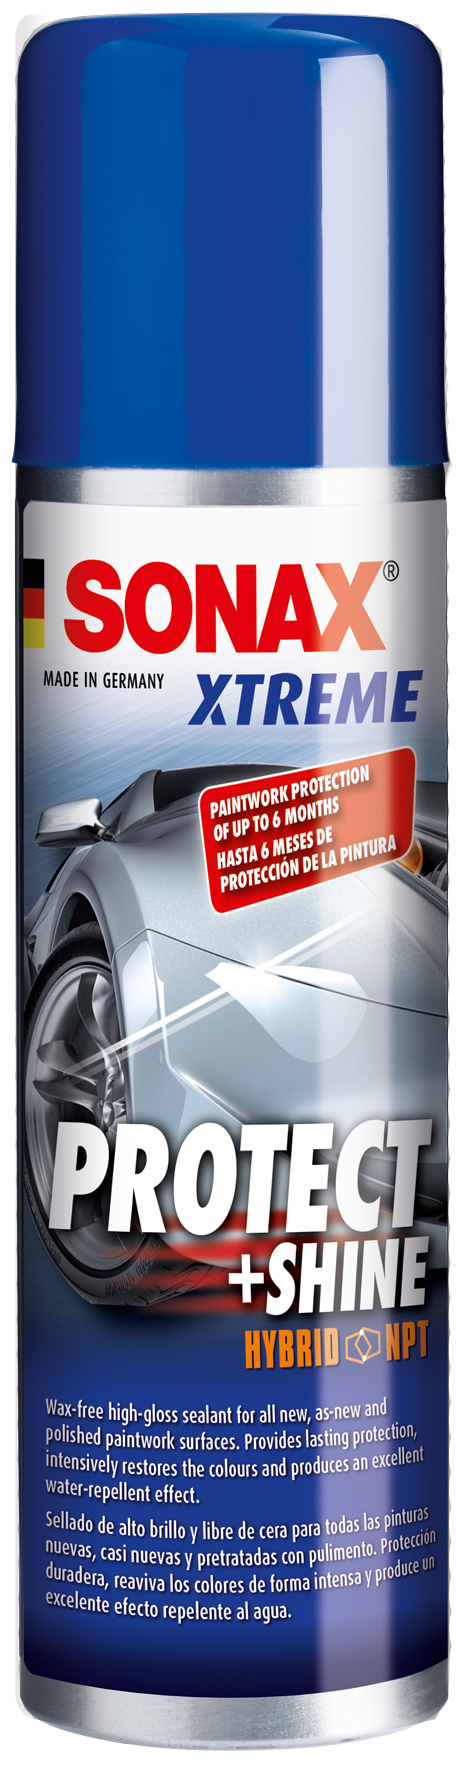 XTREME Protect+Shine Hybrid  NPT- EXTREME Bảo Vệ Mặt Sơn Sáng Bóng Dạng Lưới Lai Polymer 